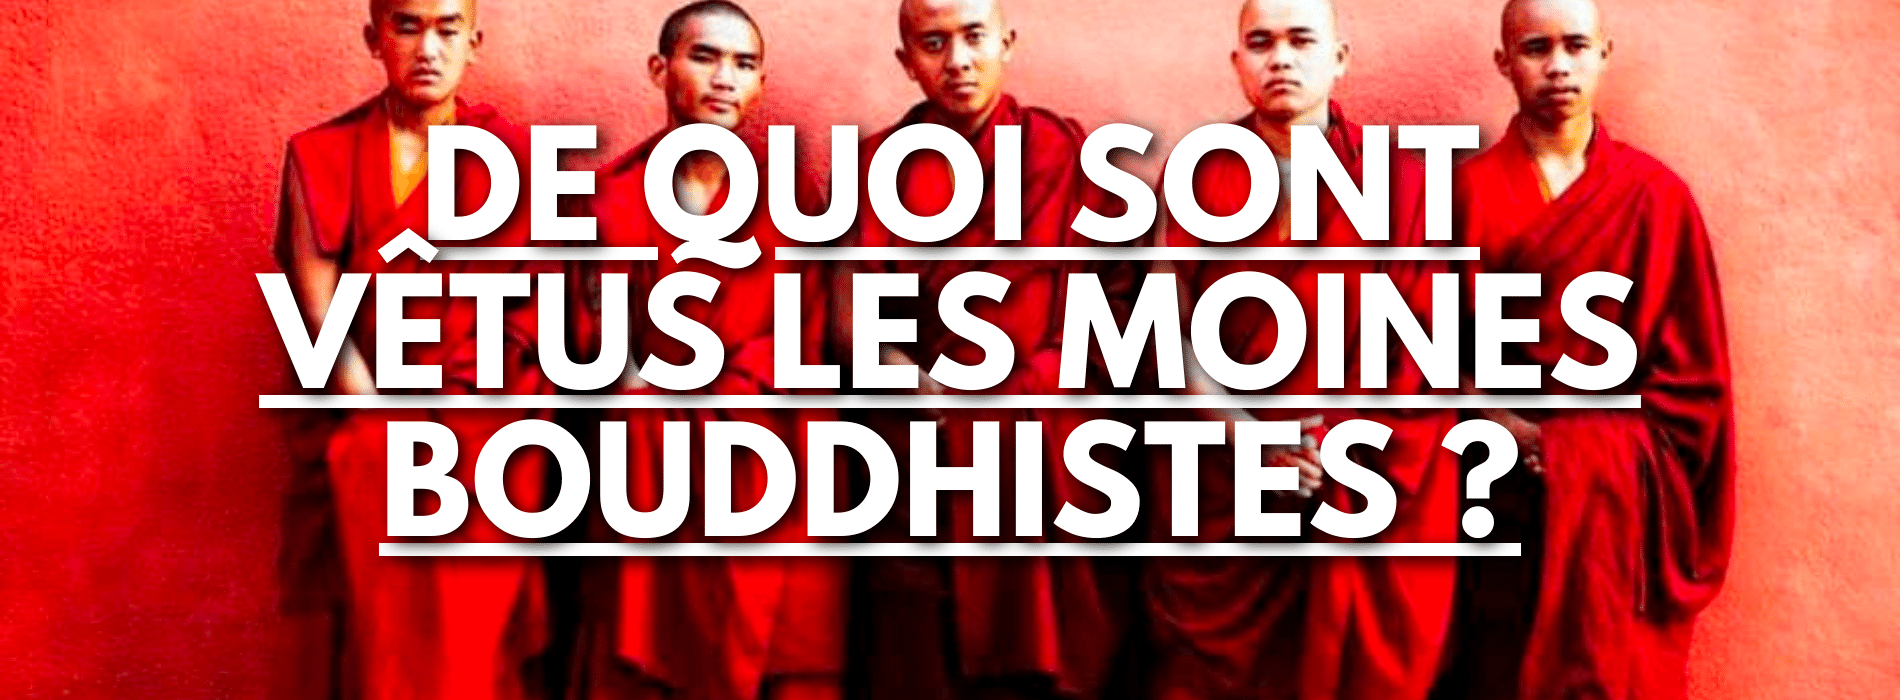 De quoi sont vêtus les moines bouddhistes ?